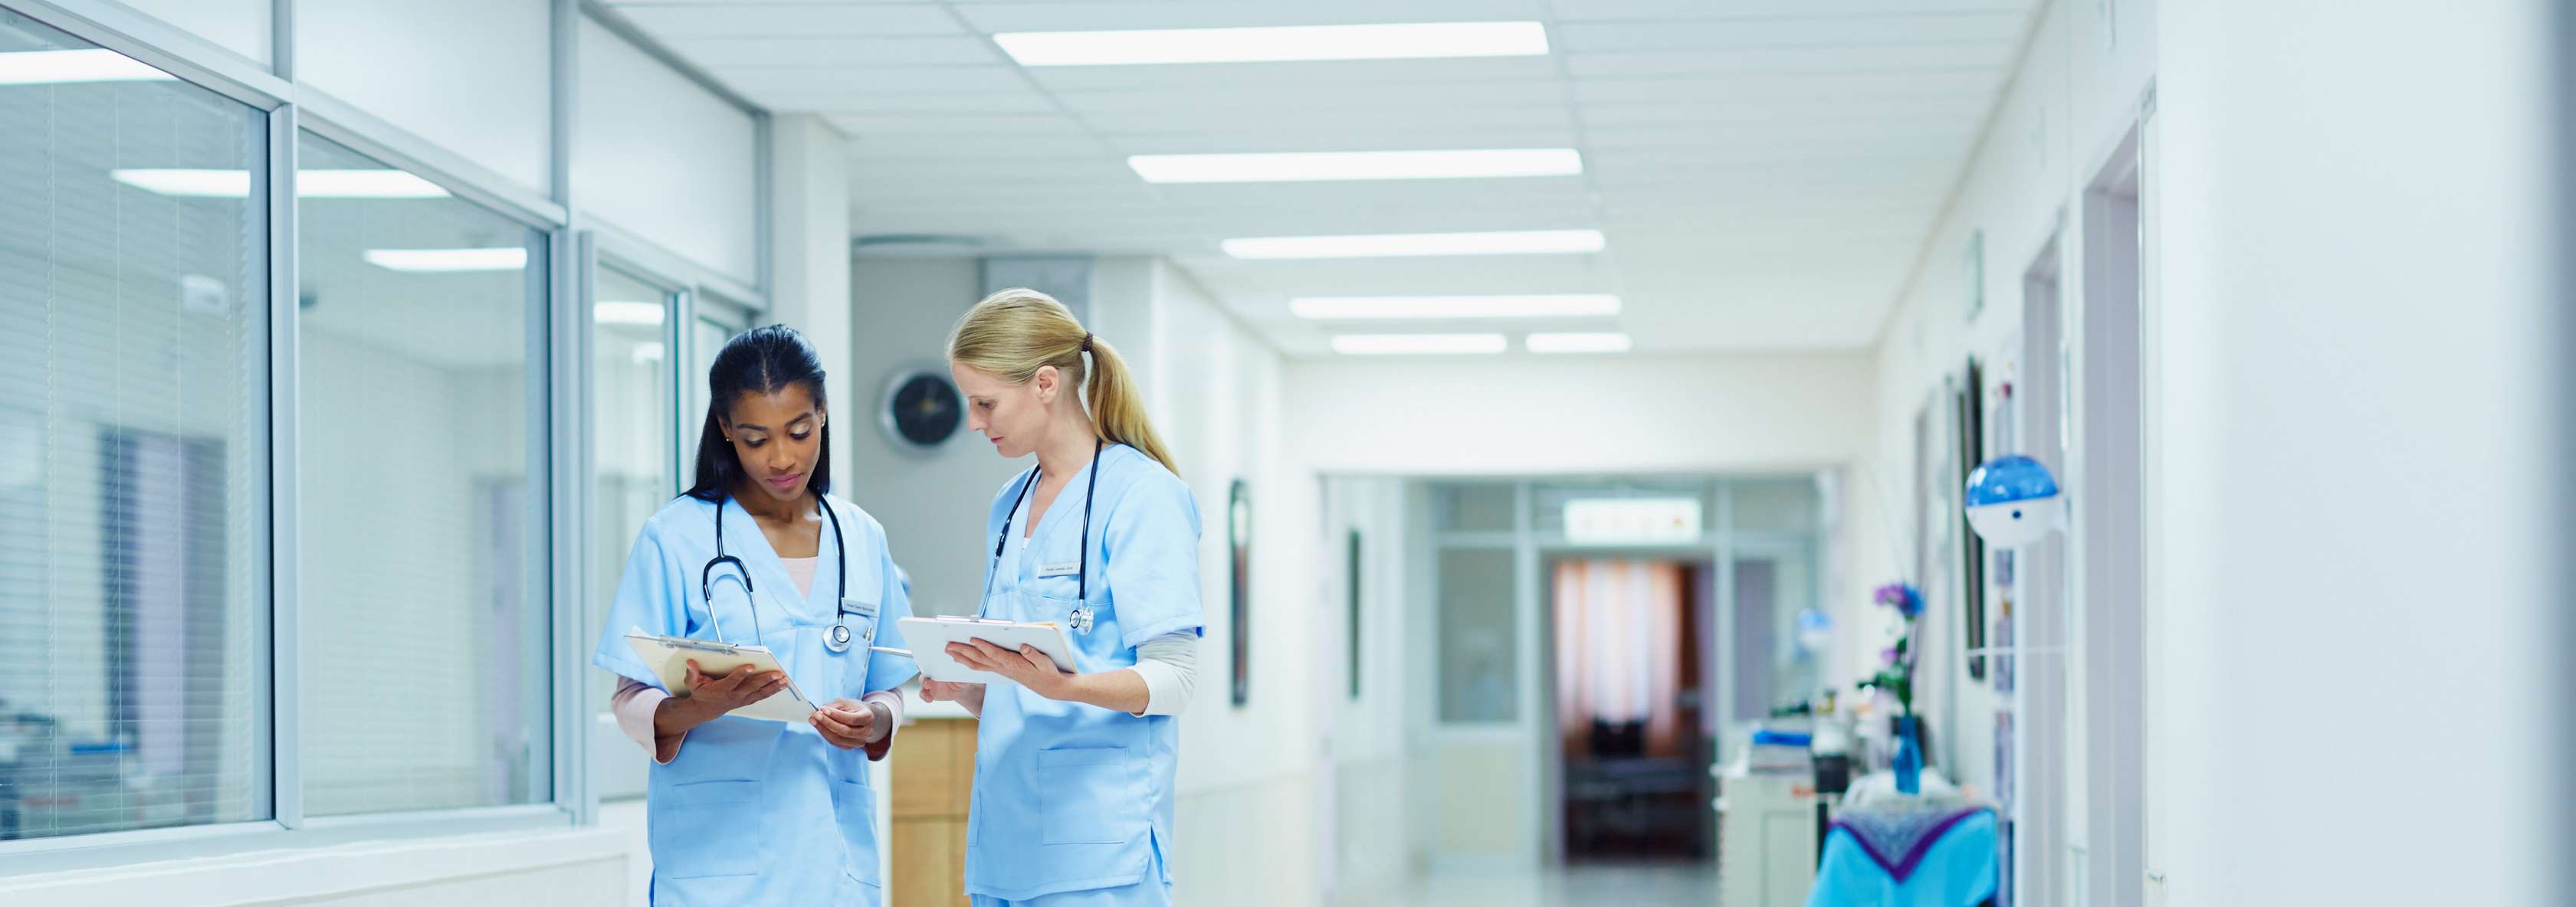 Man sieht zwei Pflegerinnen auf einem Krankenhausflur, die gemeinsam auf ein Klemmbrett schauen.